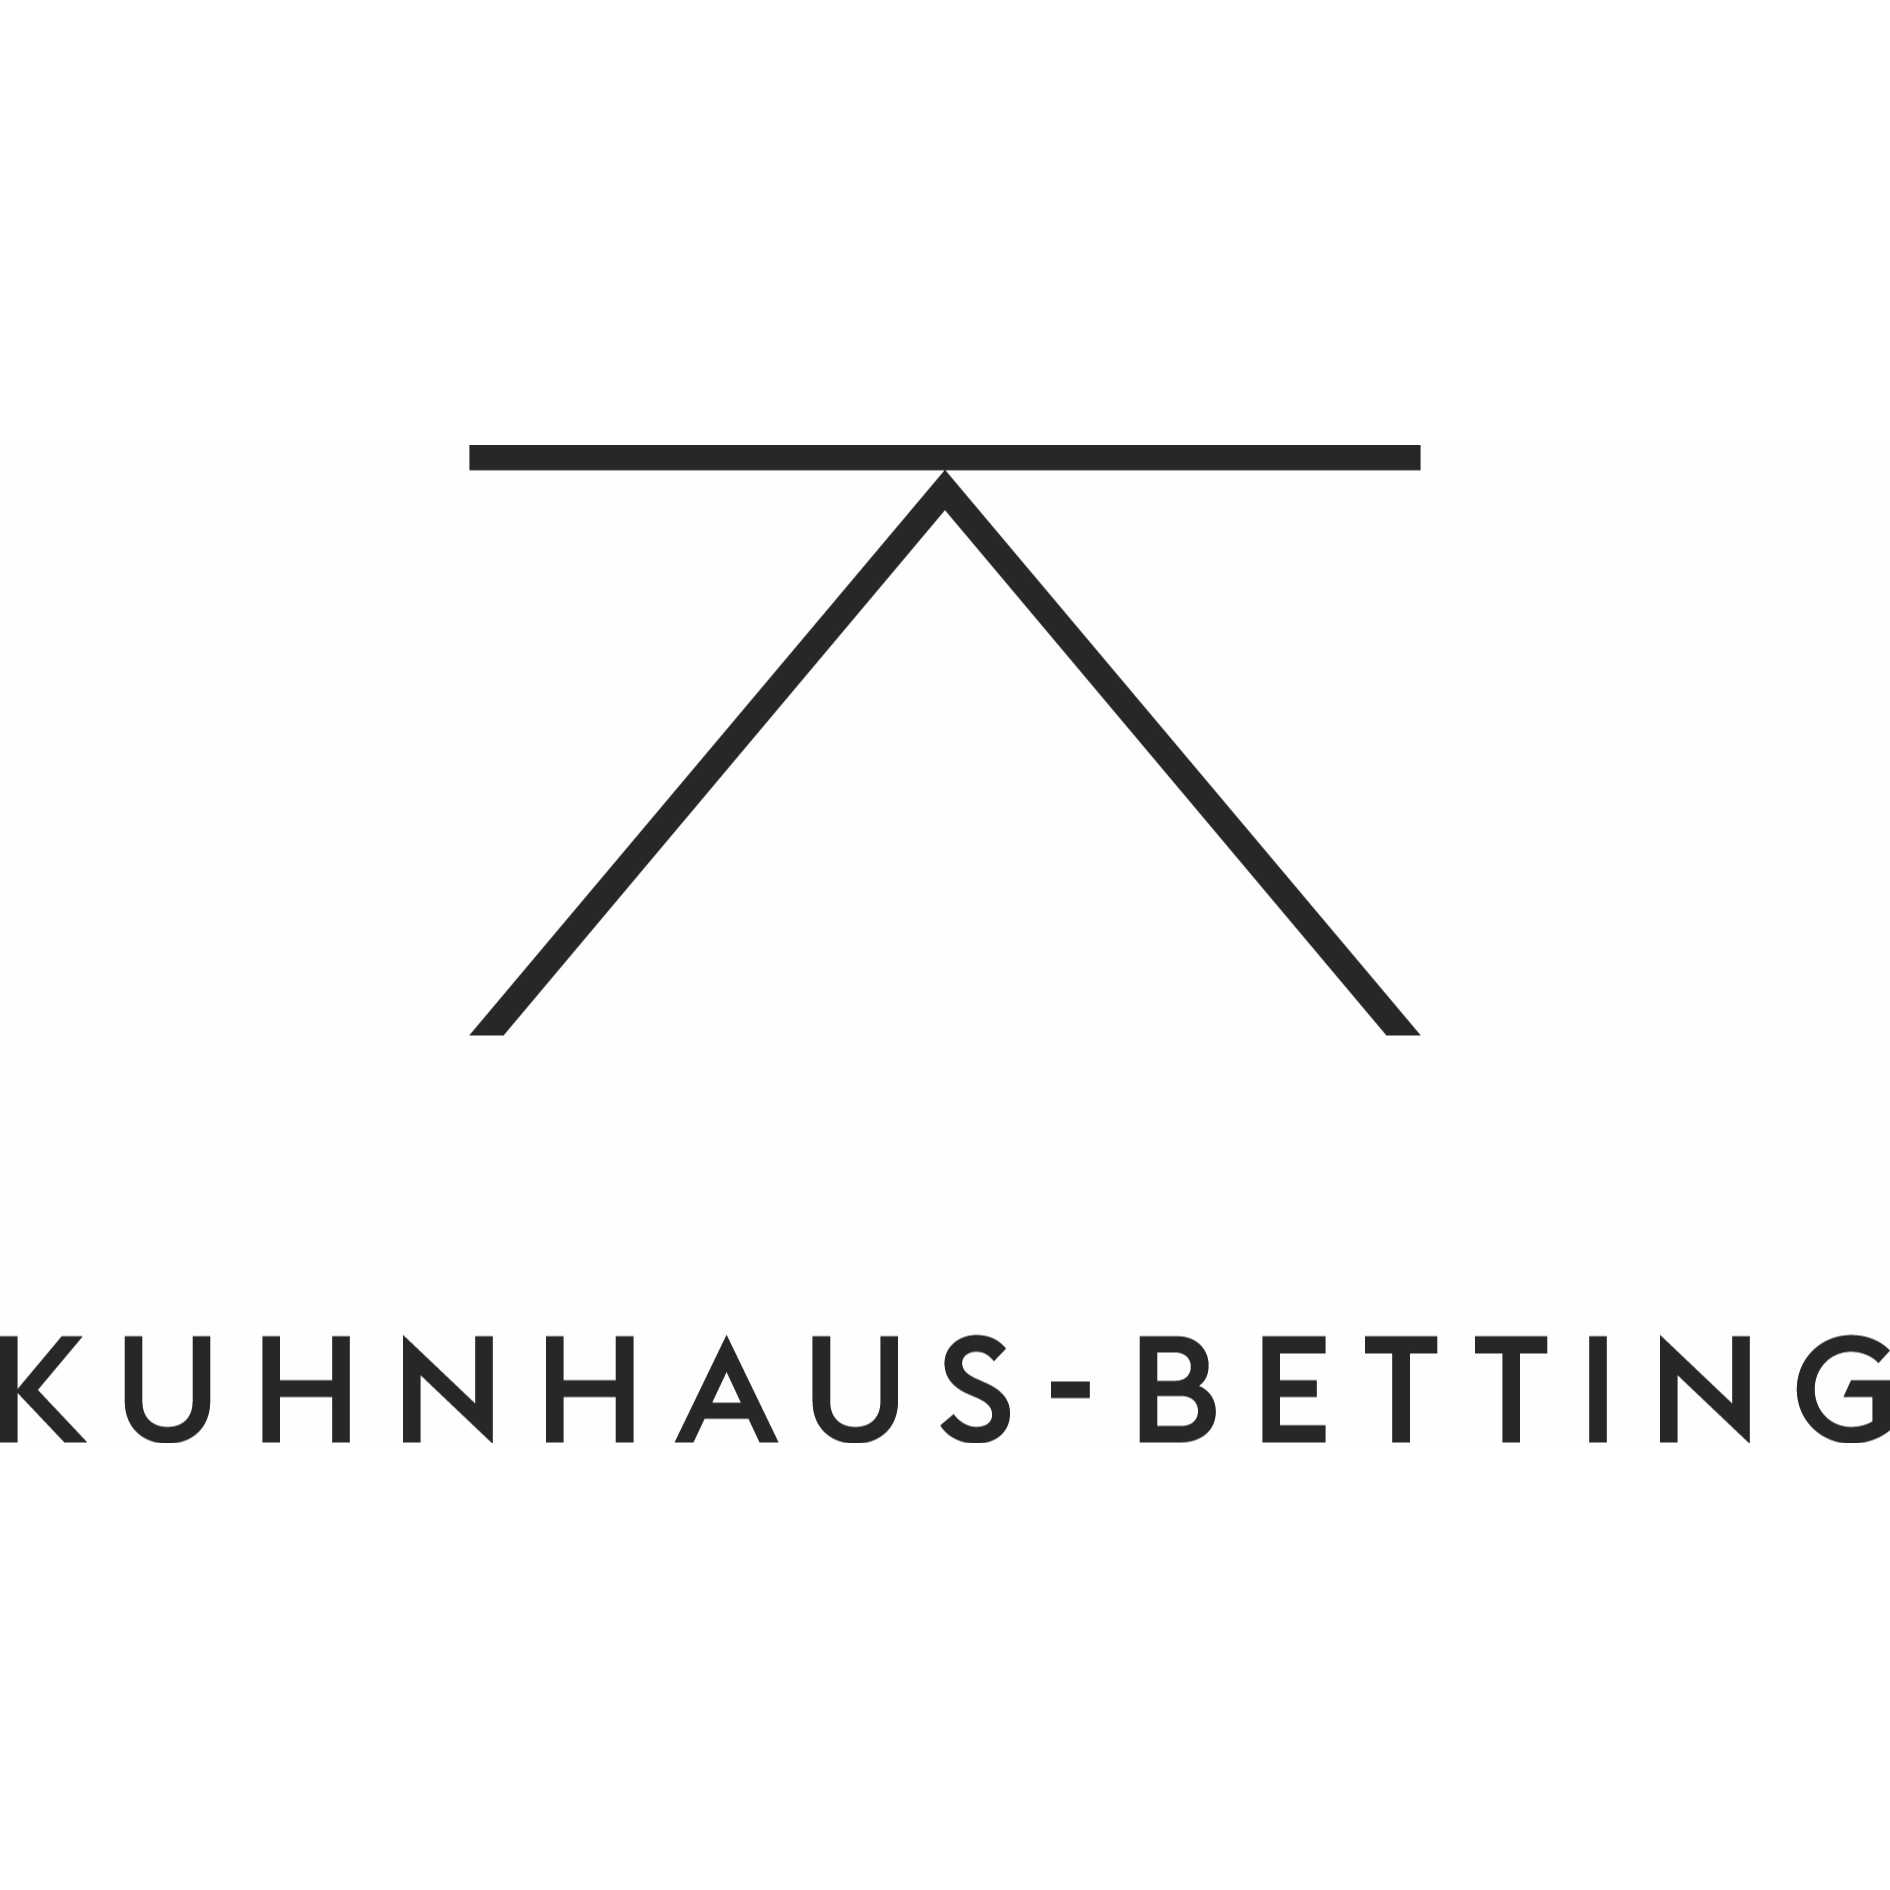 Kuhnhaus-Betting Architekten in Essen - Logo